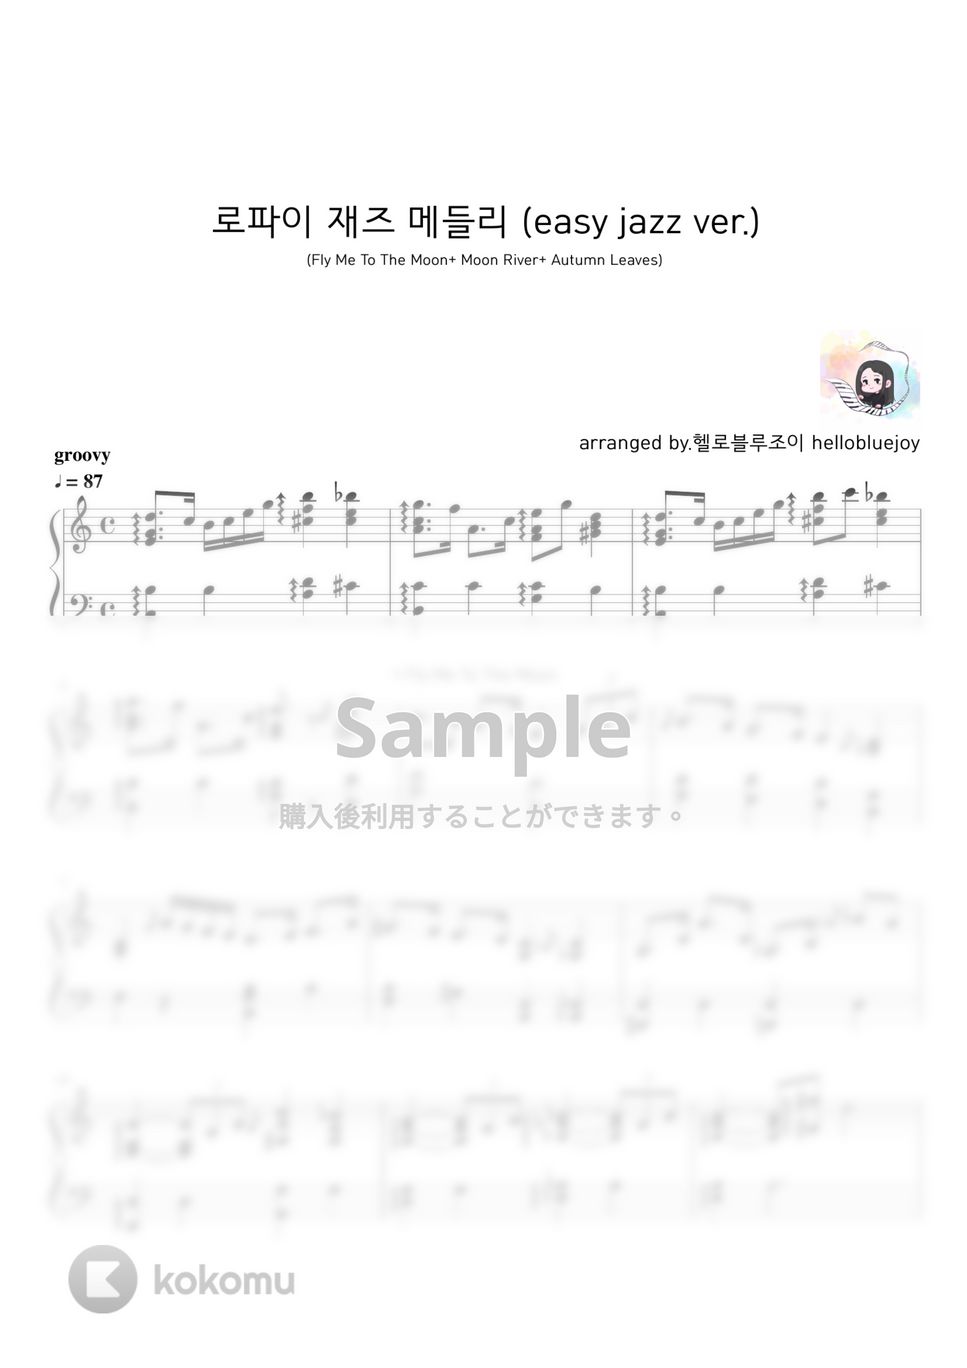 Standard Jazz - Lofi Jazz Medley (3 songs) by hellobluejoy